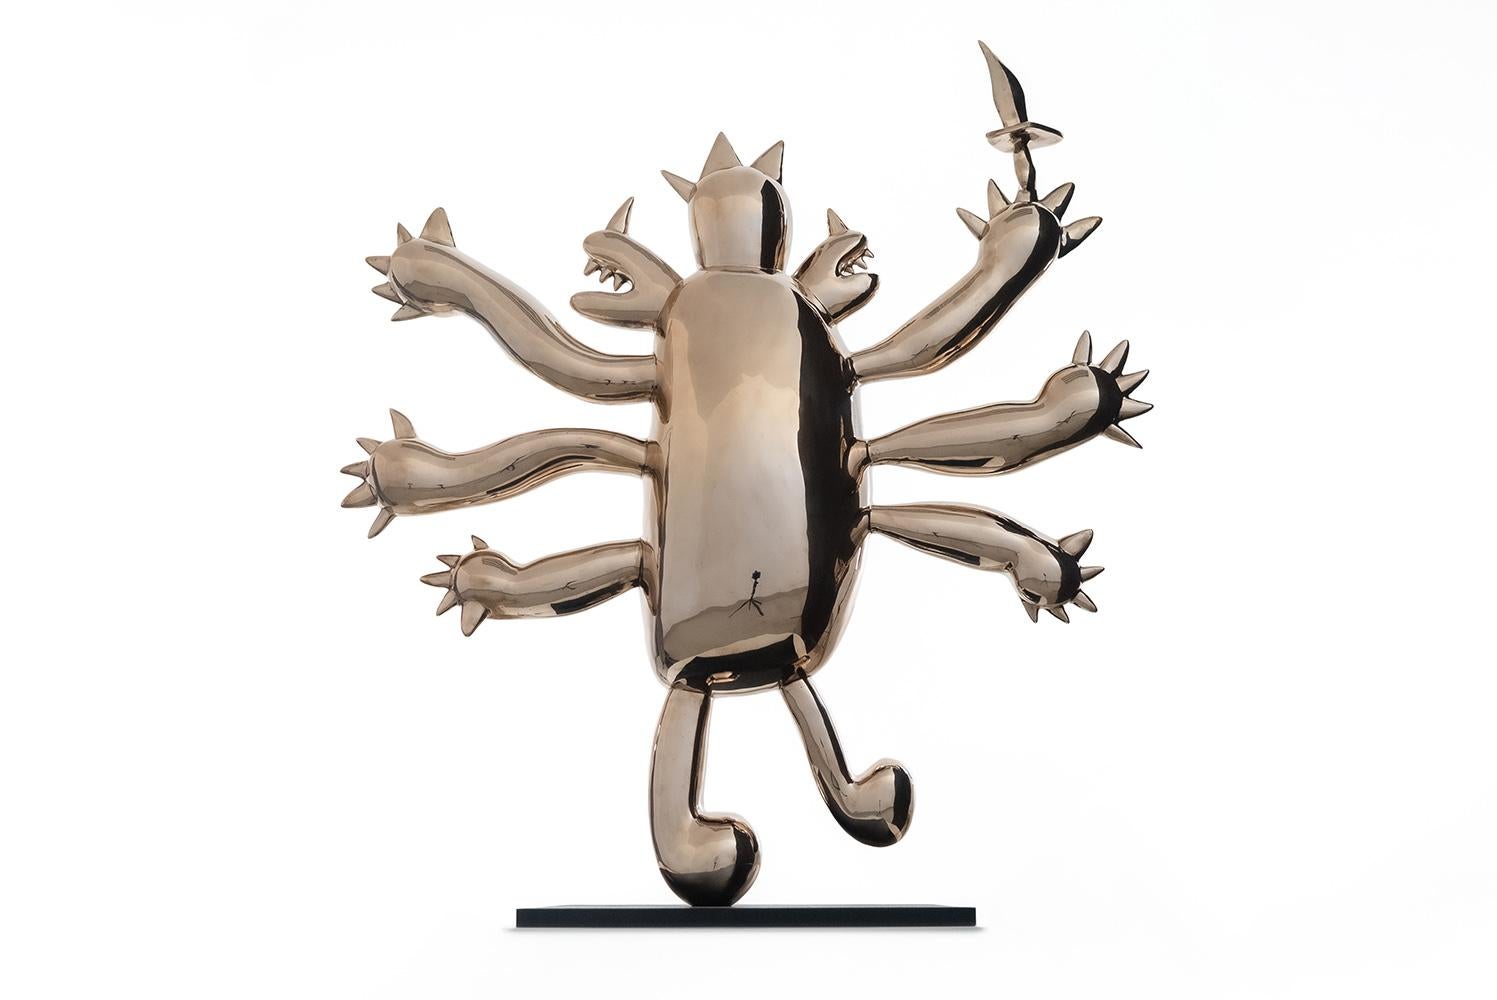 Luzar est une sculpture en bronze poli de l'artiste contemporain Marcelo Martin Burgos, dont les dimensions sont de 100 × 86 × 20 cm (39,4 × 33,9 × 7,9 in). 
La sculpture est signée et numérotée, elle fait partie d'une édition limitée à 12